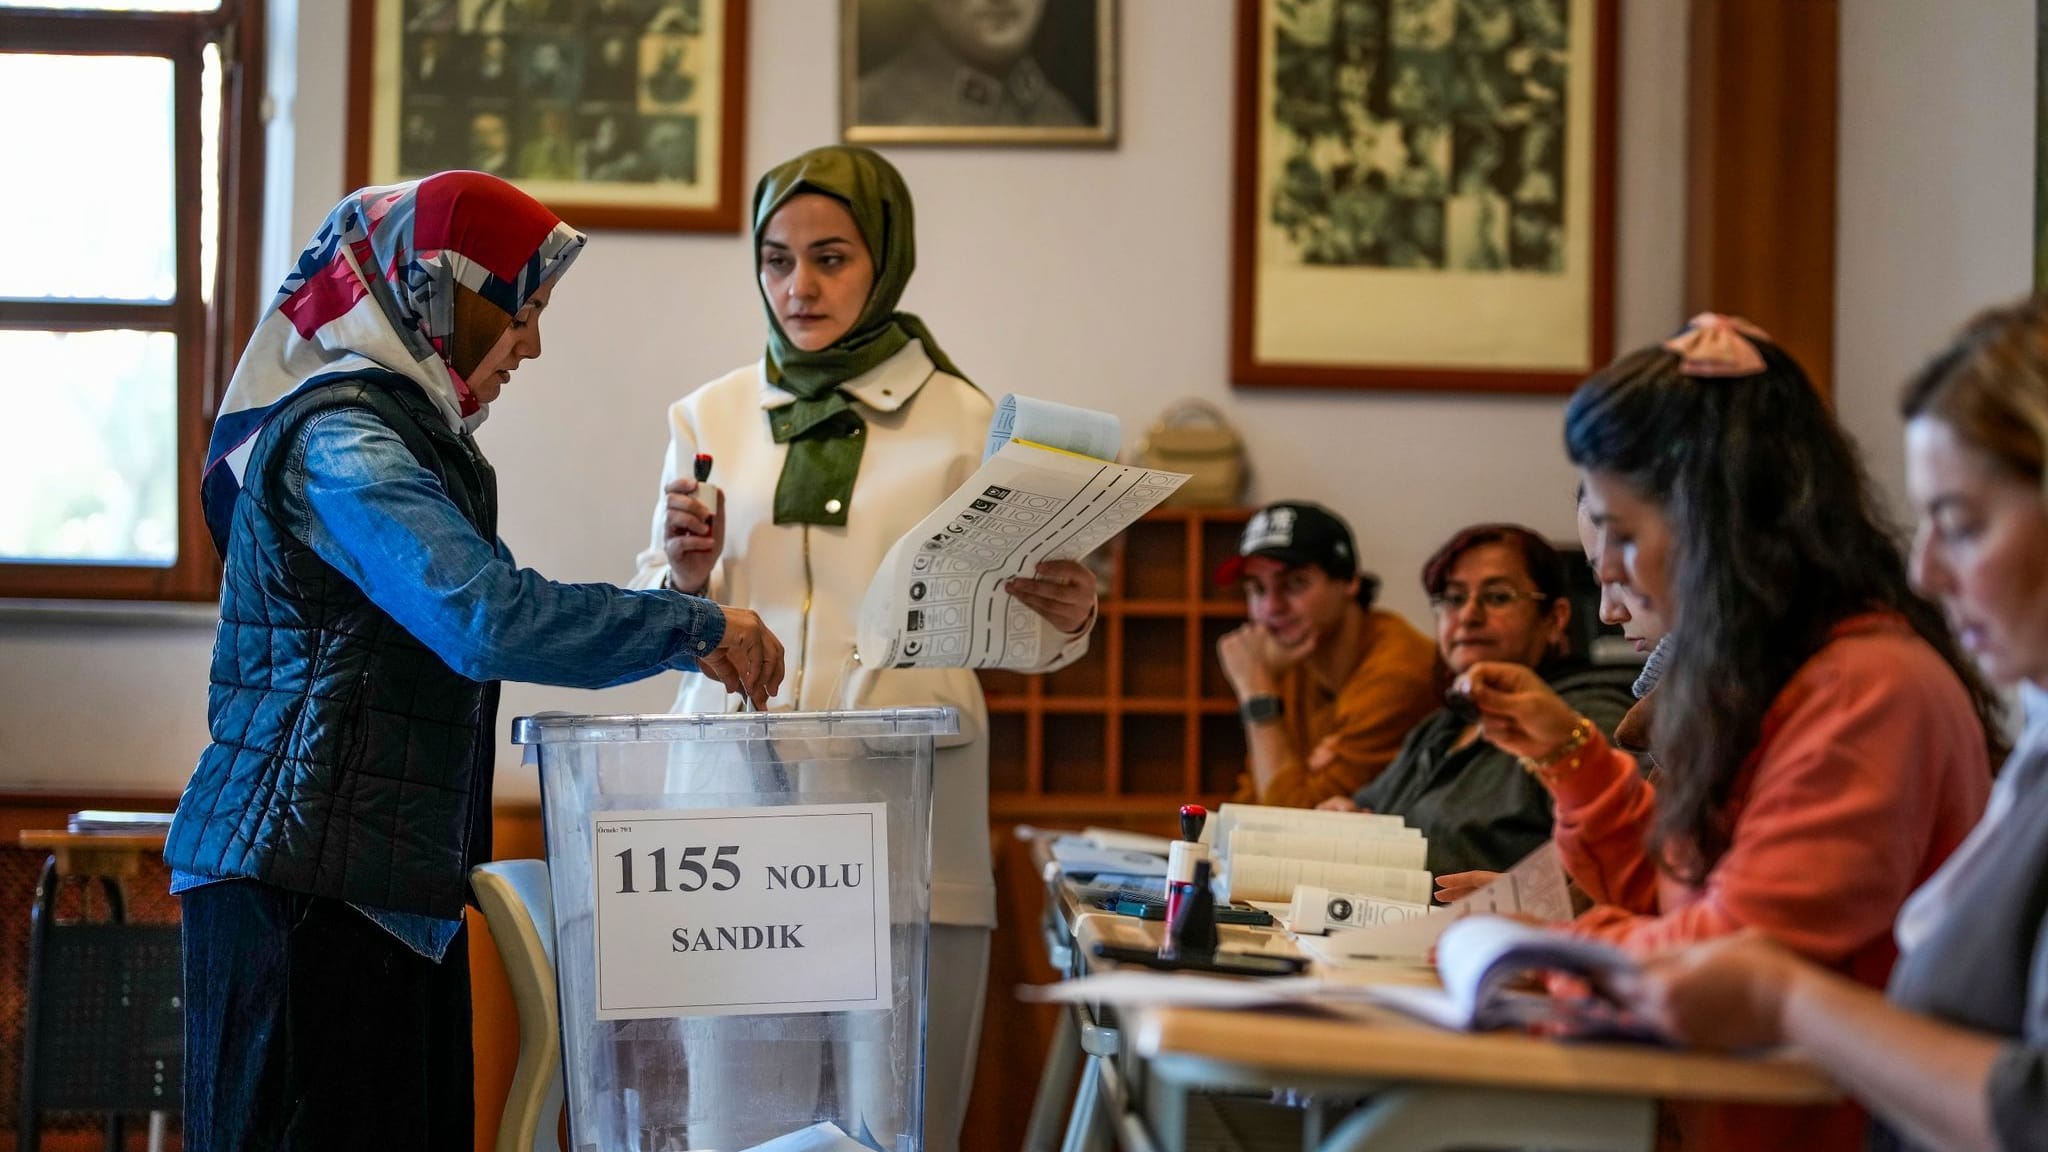 Türkei: Zwei Tote bei Kommunalwahl nach Streit im Südosten